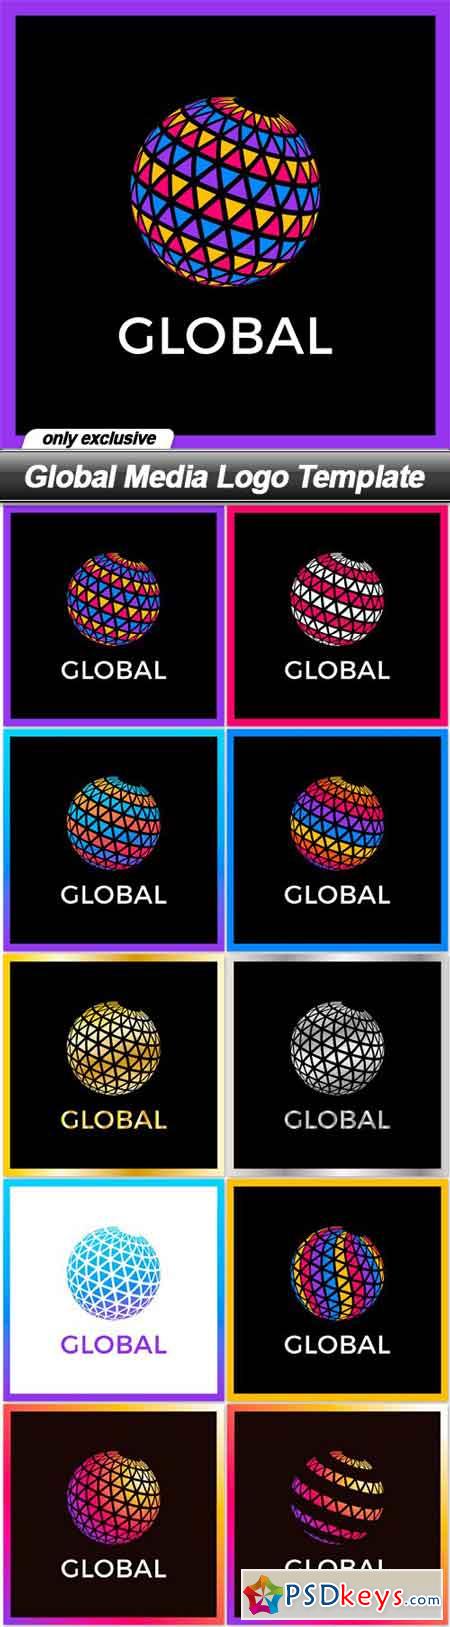 Global Media Logo Template - 10 EPS